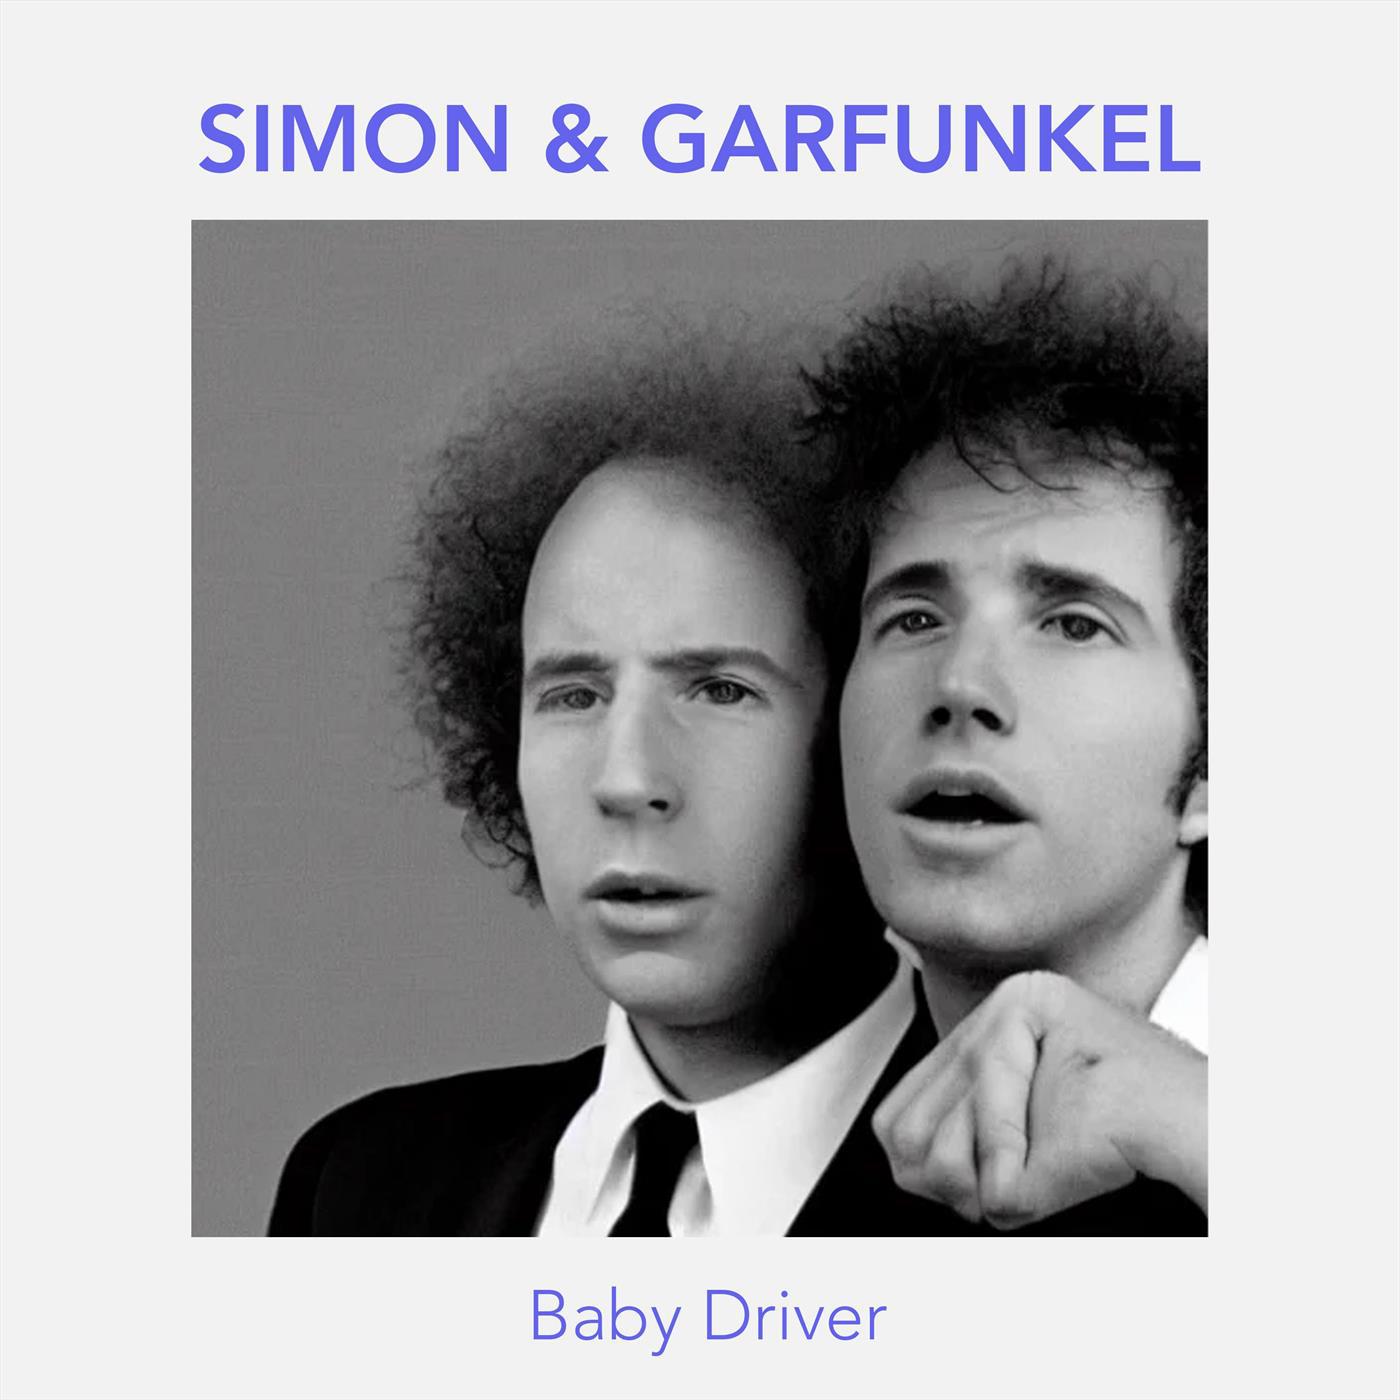 Simon & Garfunkel - Song for the Asking (Live)